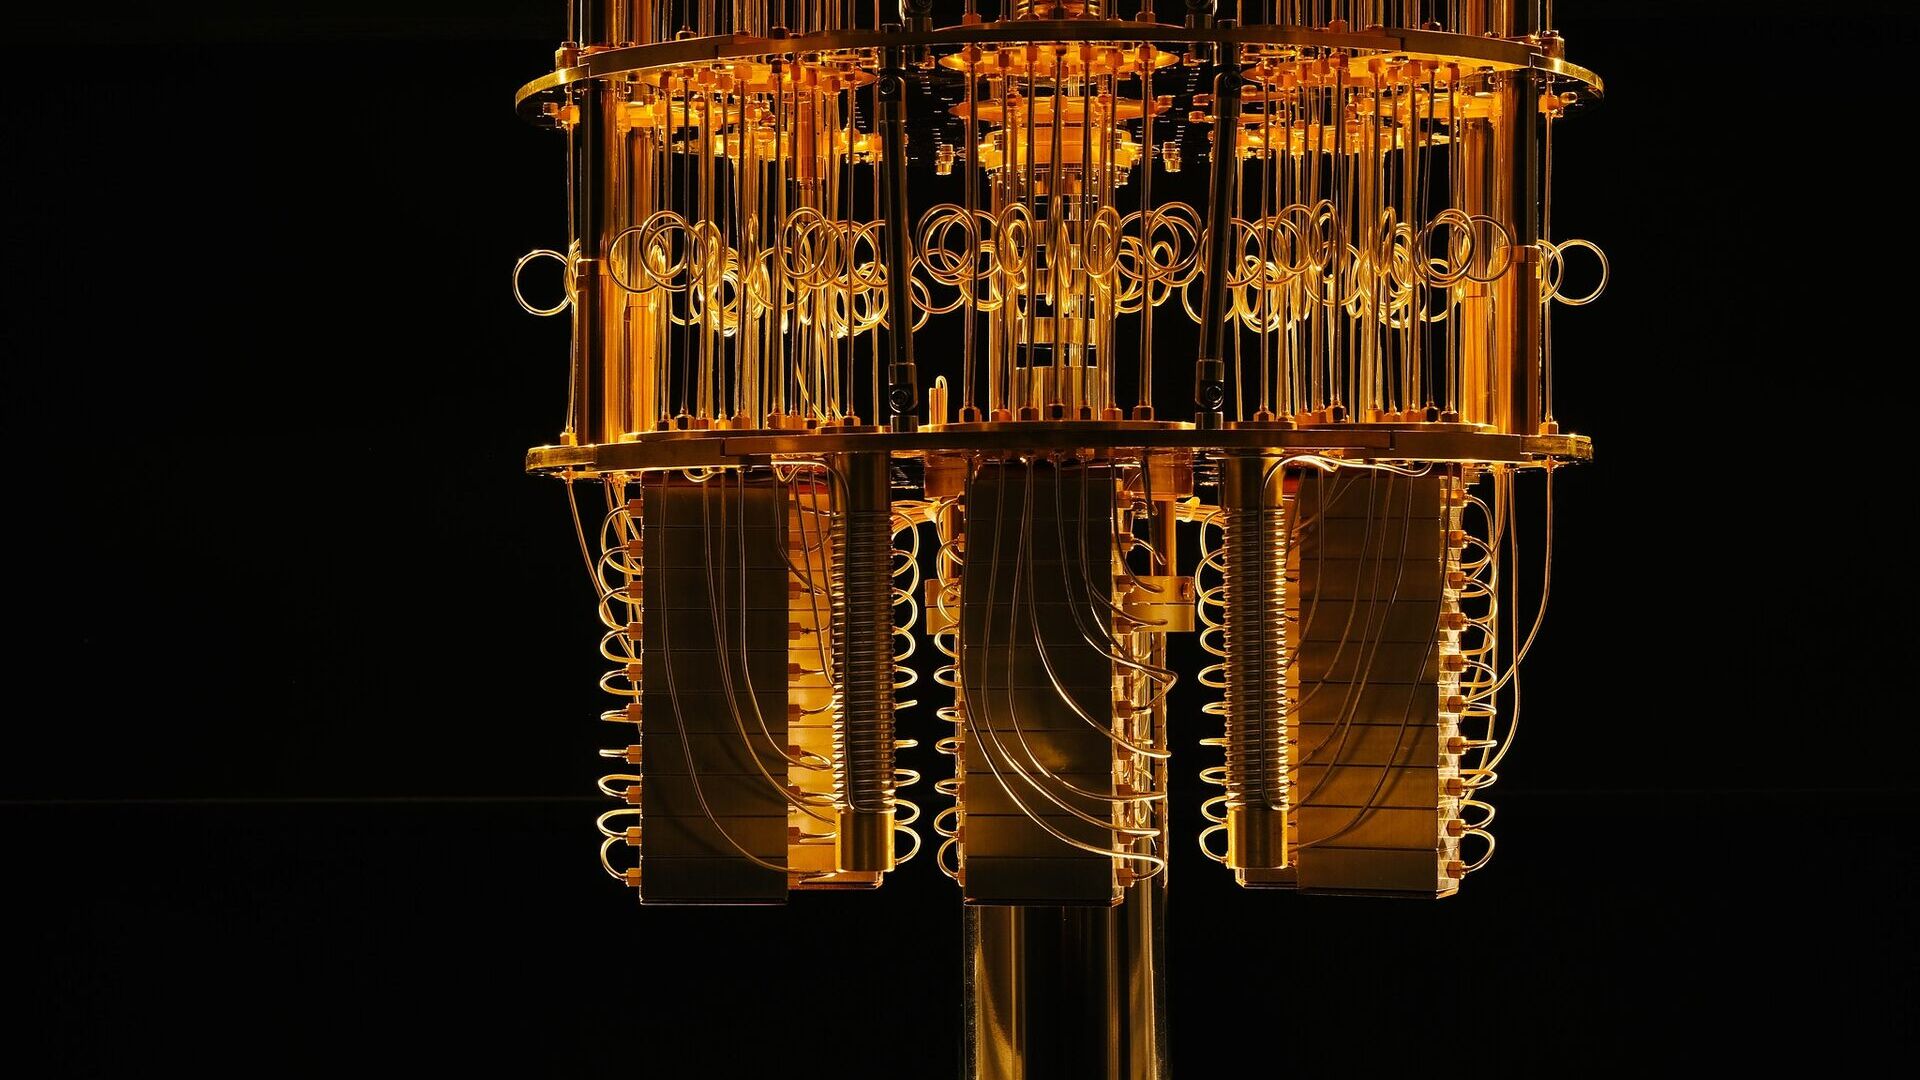 कई हालिया प्रौद्योगिकियों का अभिसरण आईबीएम द्वारा क्वांटम कंप्यूटरों के अध्ययन को संभव बनाता है